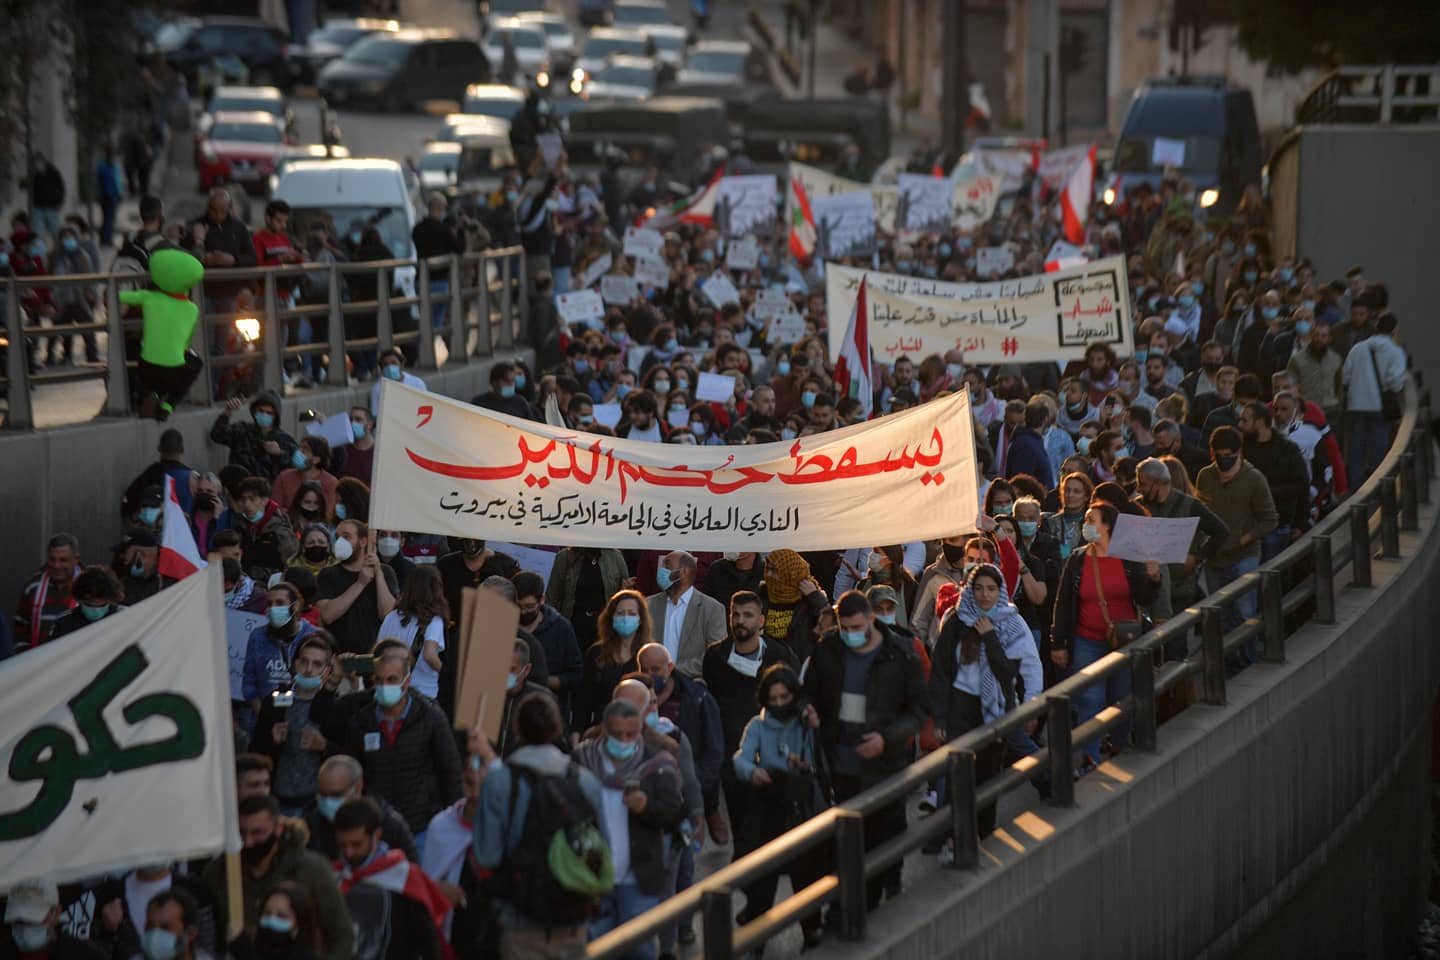 Lübnan’da döviz kurlarındaki ani yükseliş sonrasında, derinleşen ekonomik krize karşı yüzlerce kişi sokağa çıktı